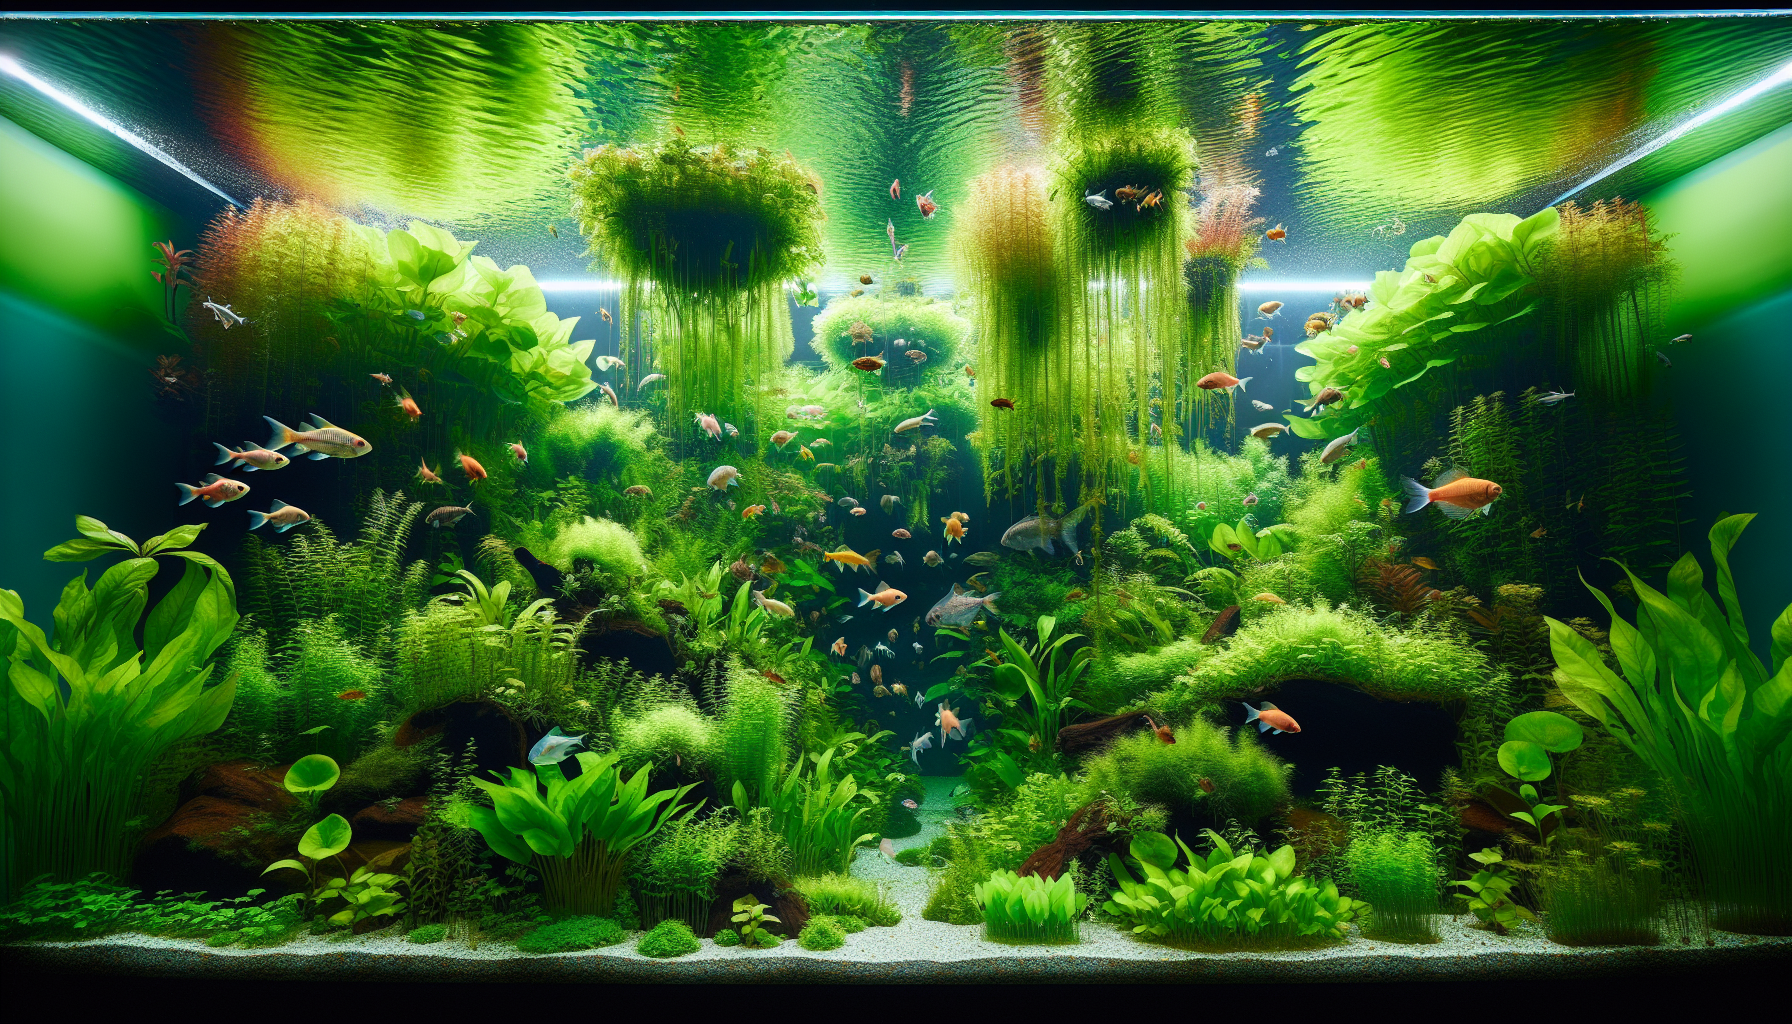 Incorporating floating plants into aquarium design